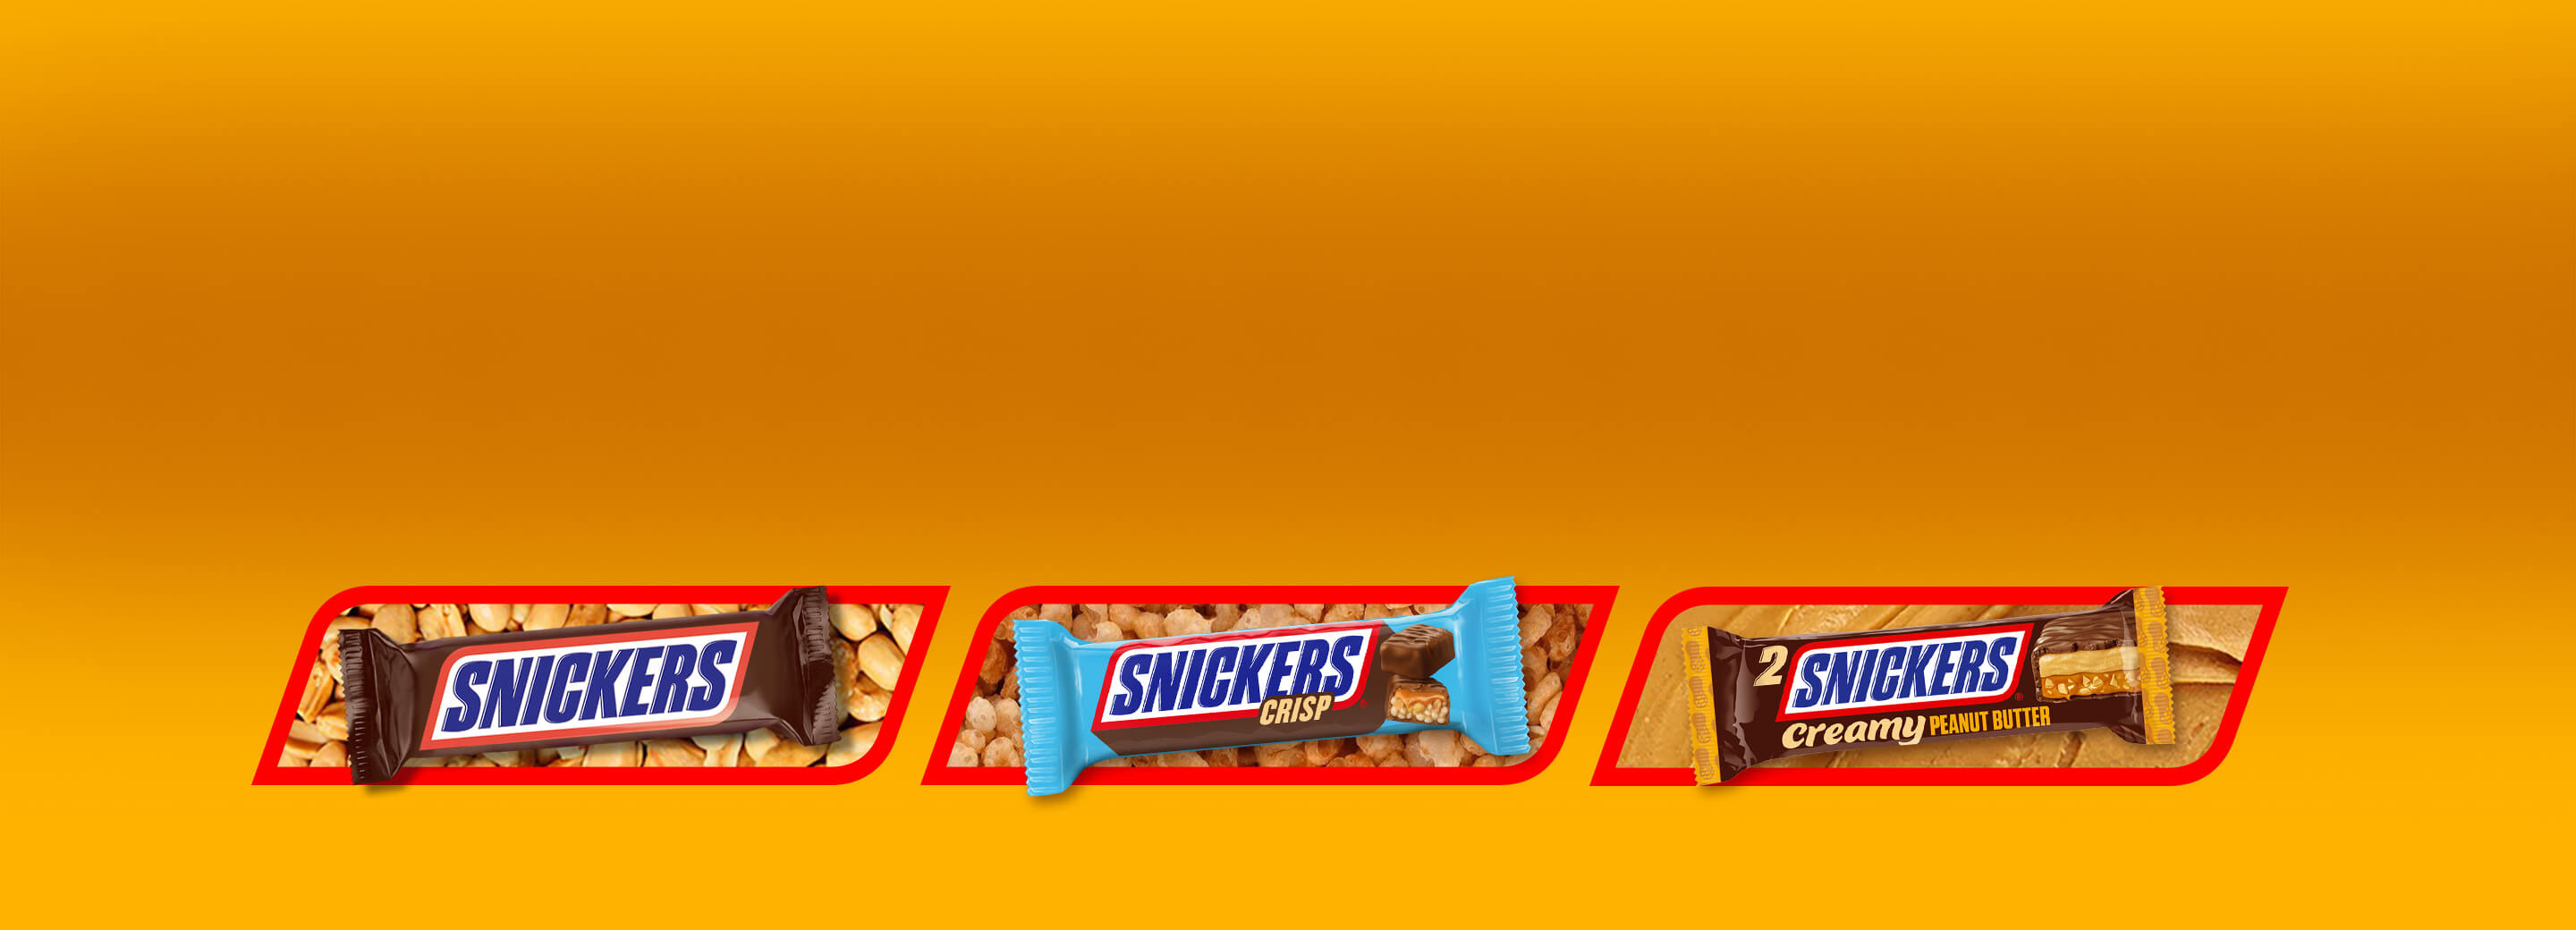 Snickers-Produkte mit Original, Crisp, Creamy